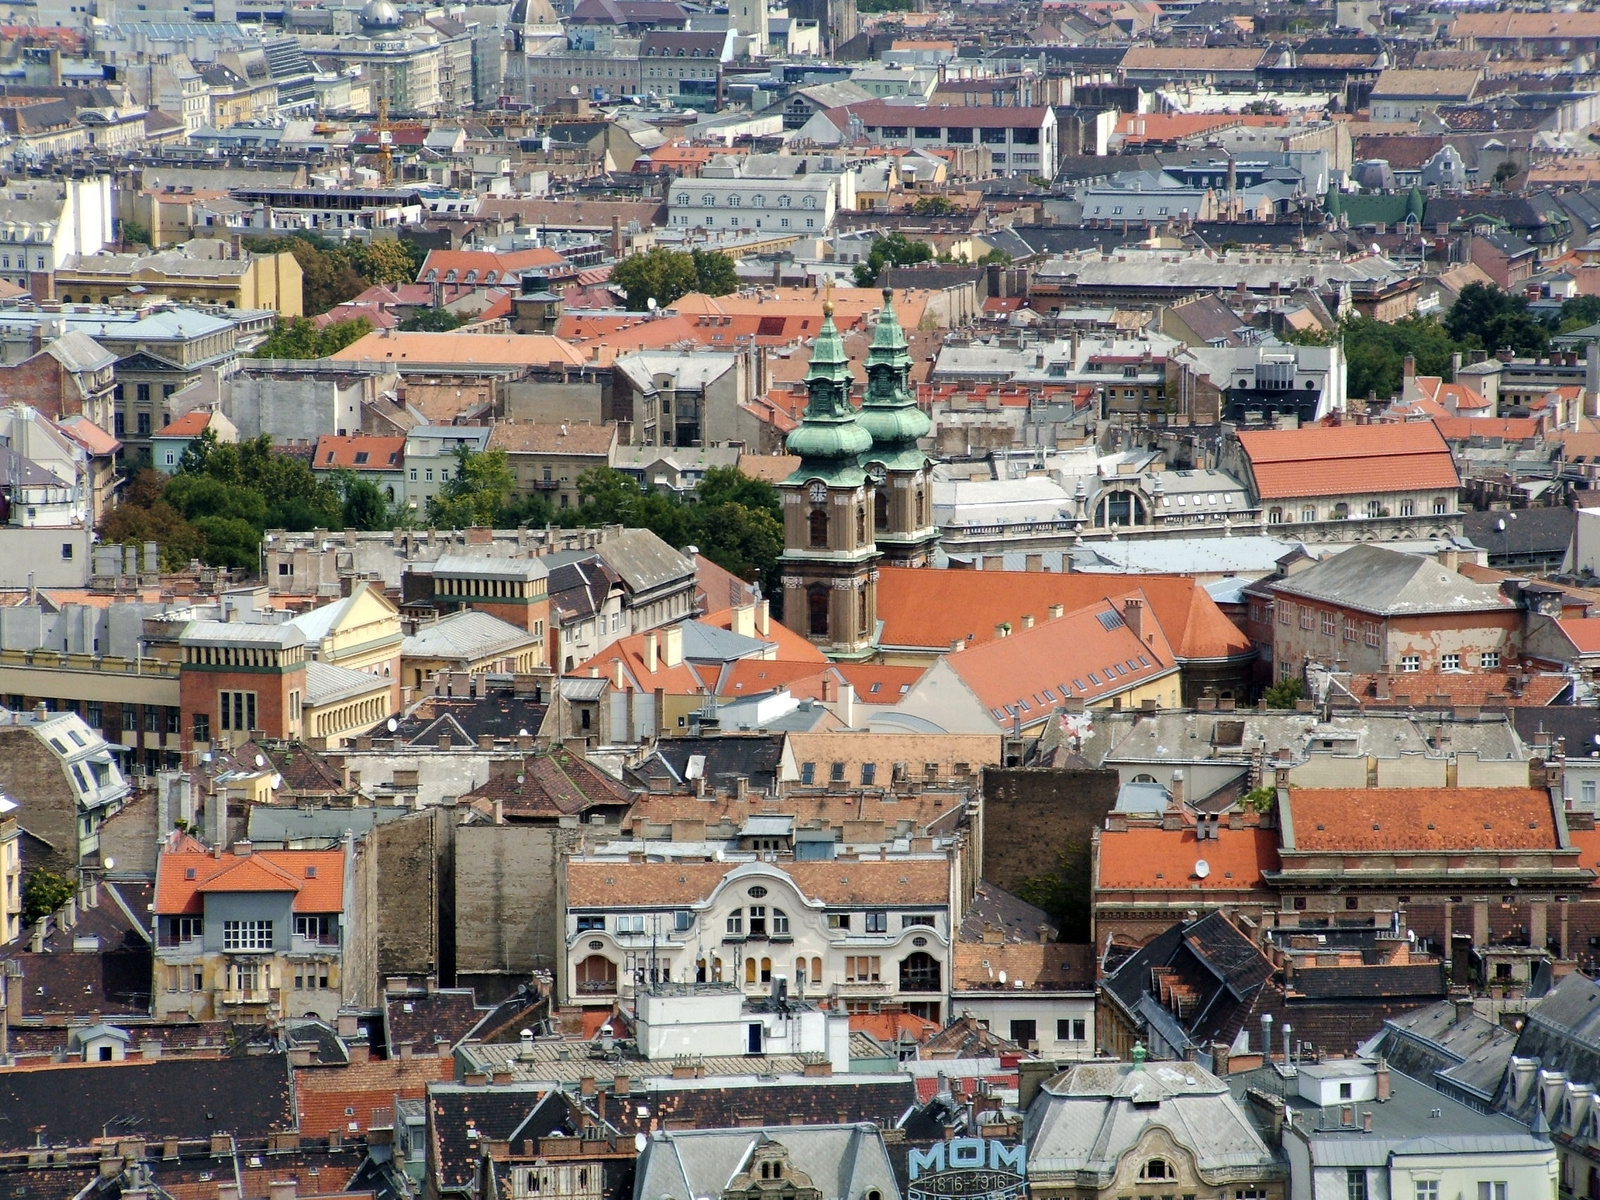 Budapest látkép